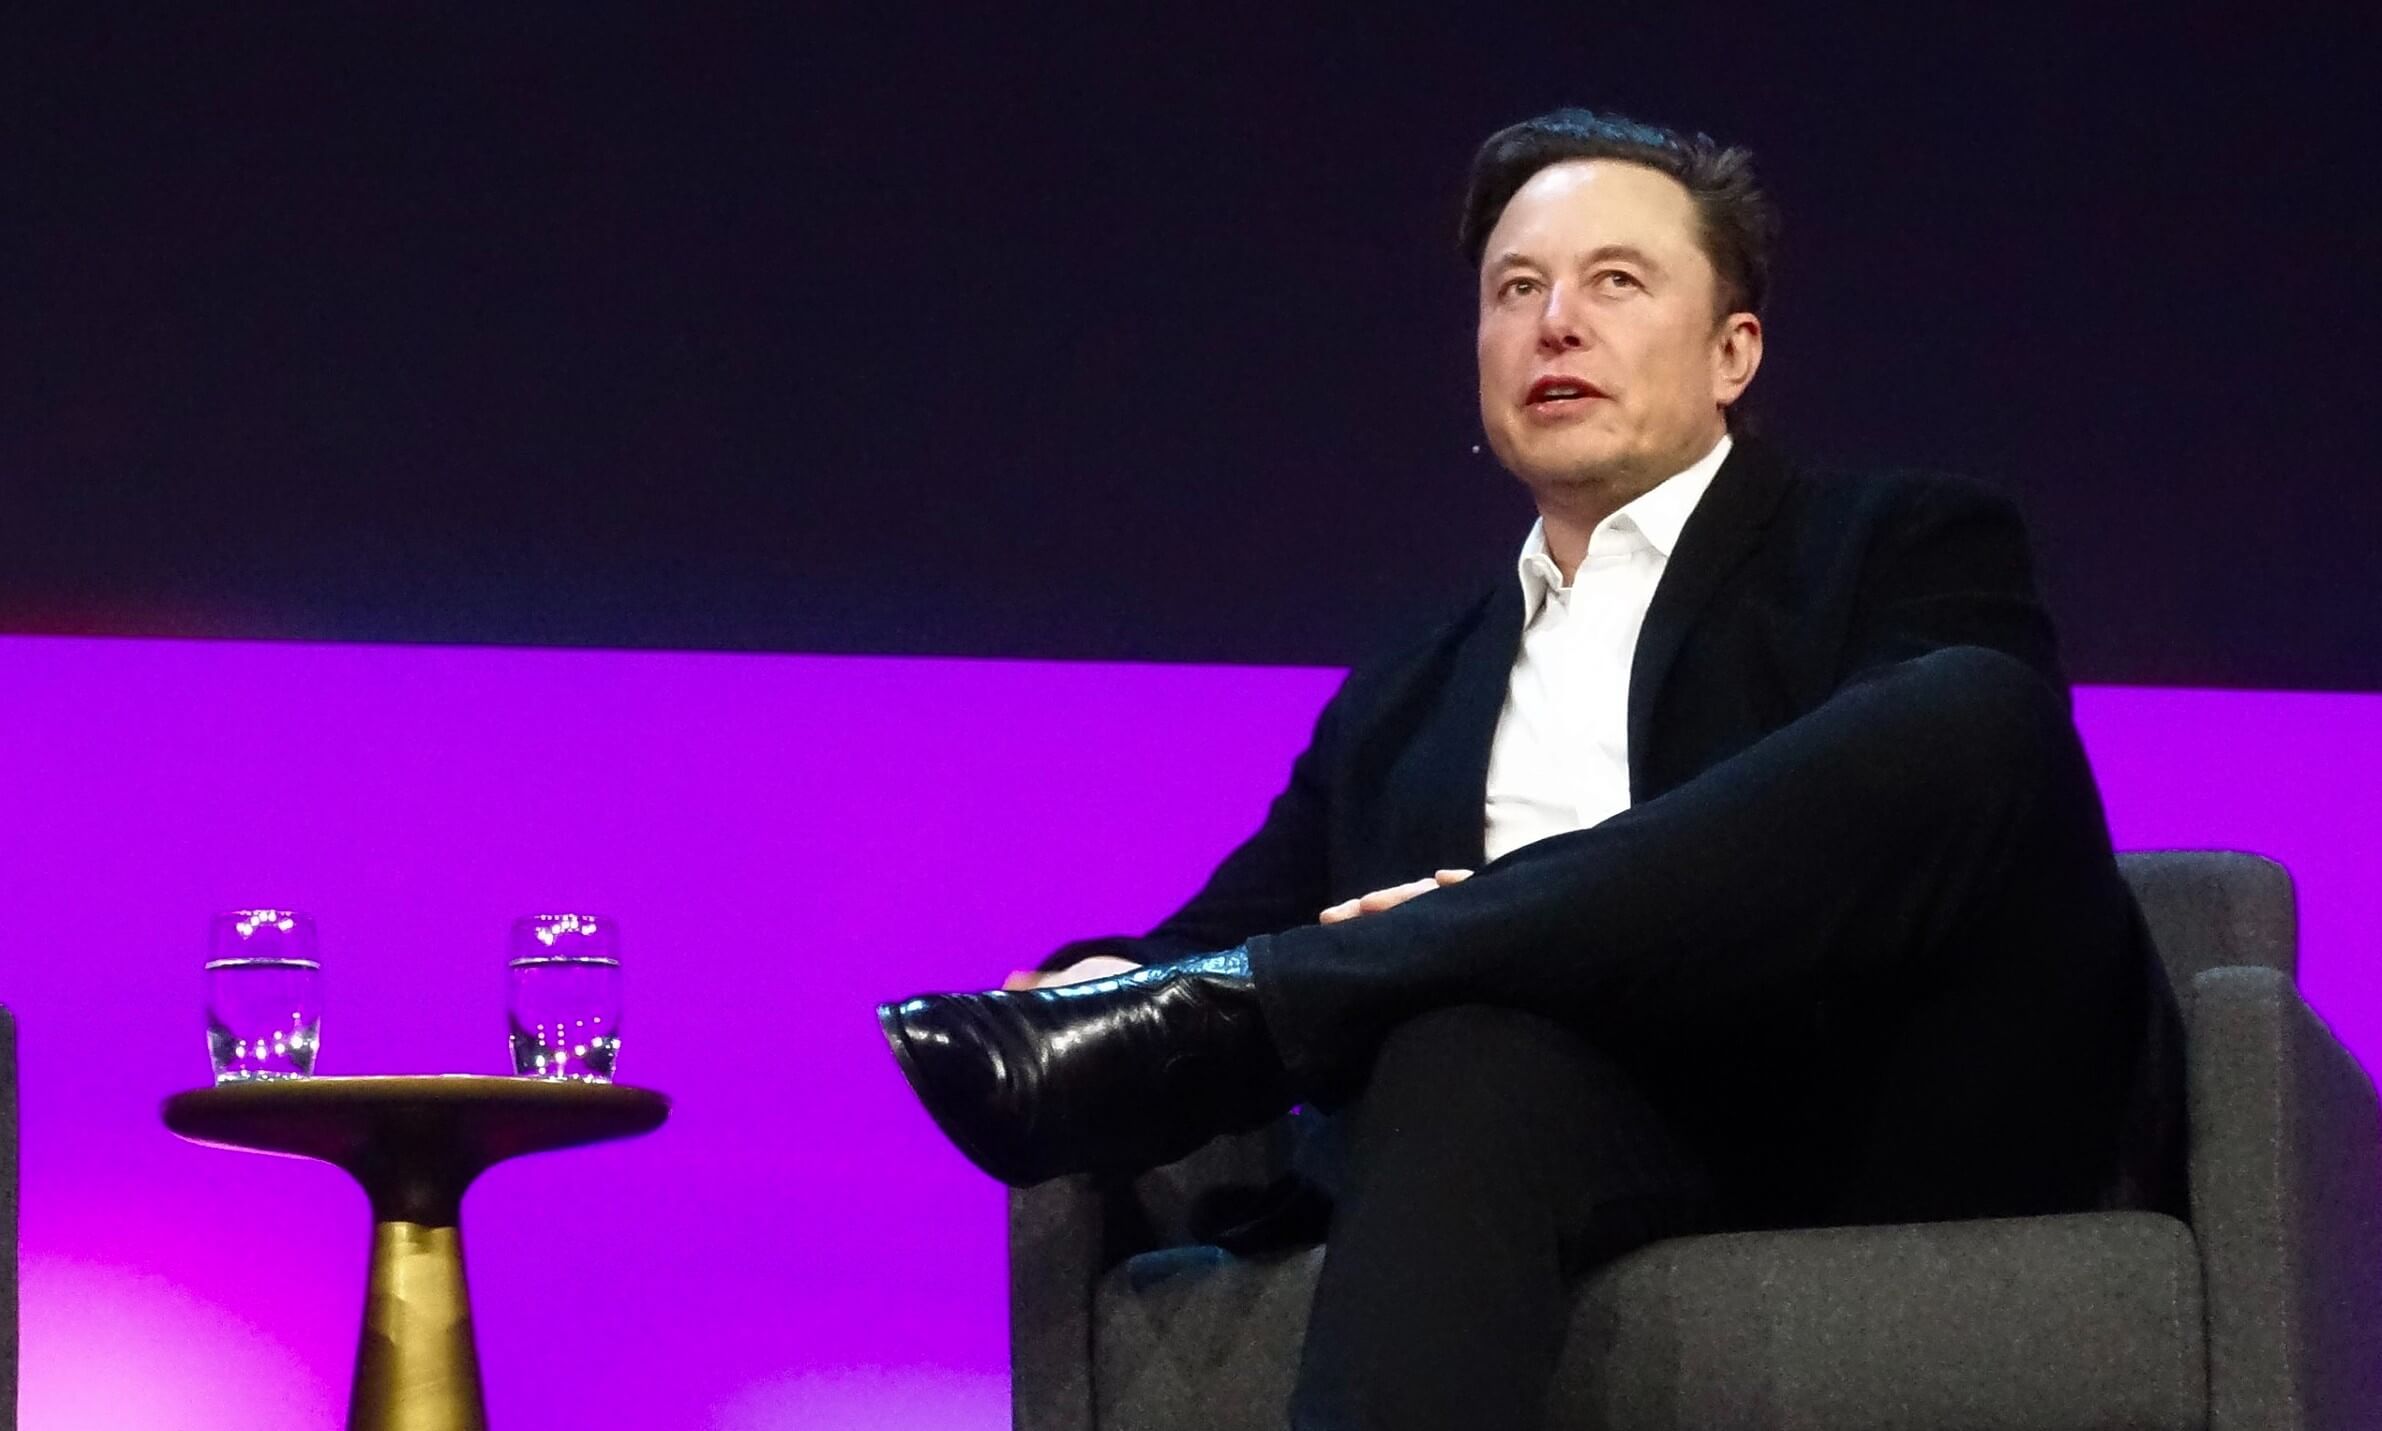 يشرح Elon Musk مبيعات TSLA الأخيرة البالغة 3.9 مليار دولار